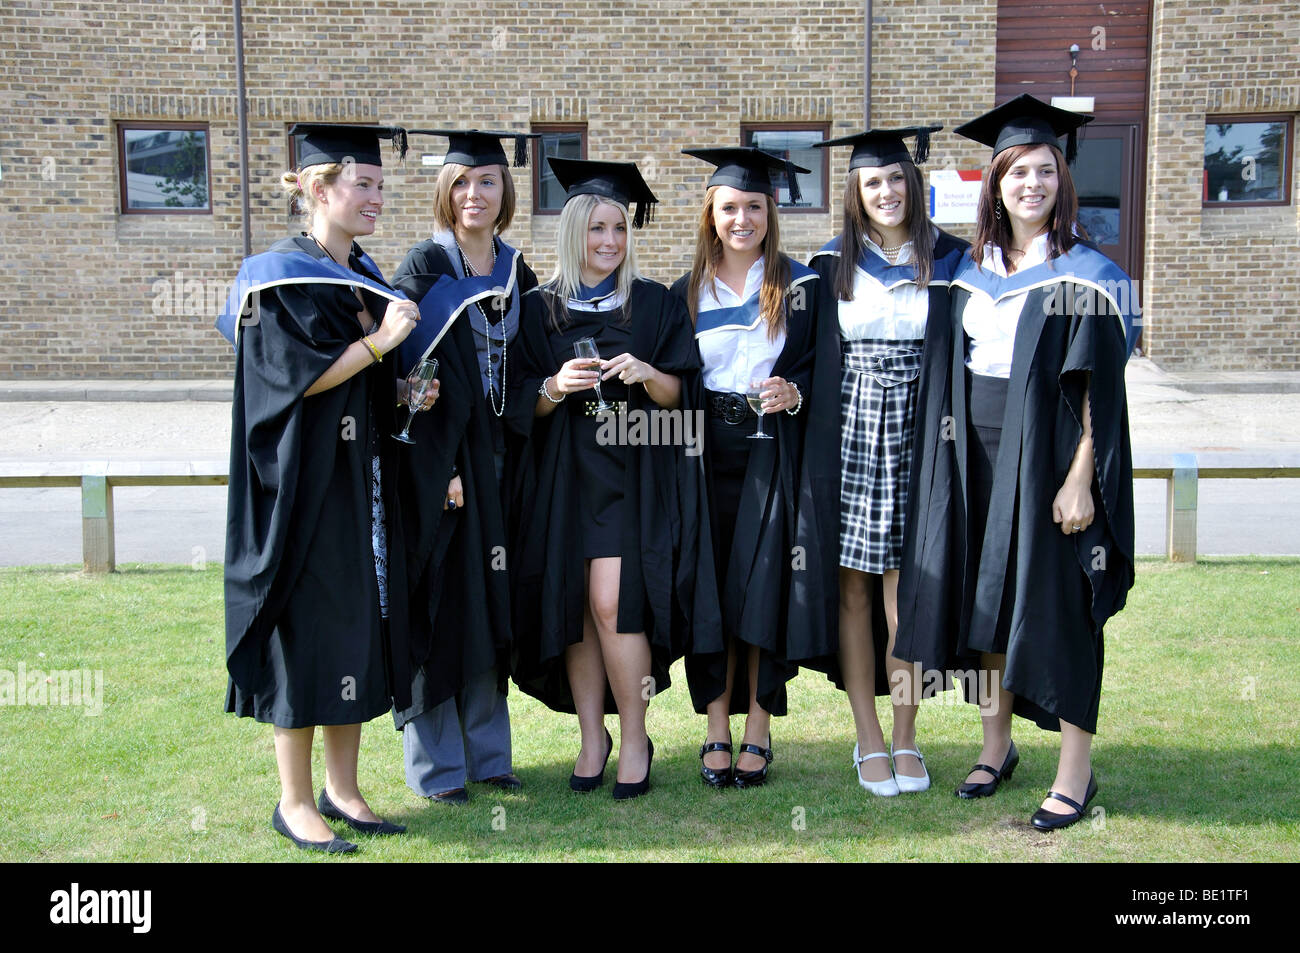 Femmina di laureati alla cerimonia di laurea, Oxford Brookes University, Headington, Oxfordshire, England, Regno Unito Foto Stock